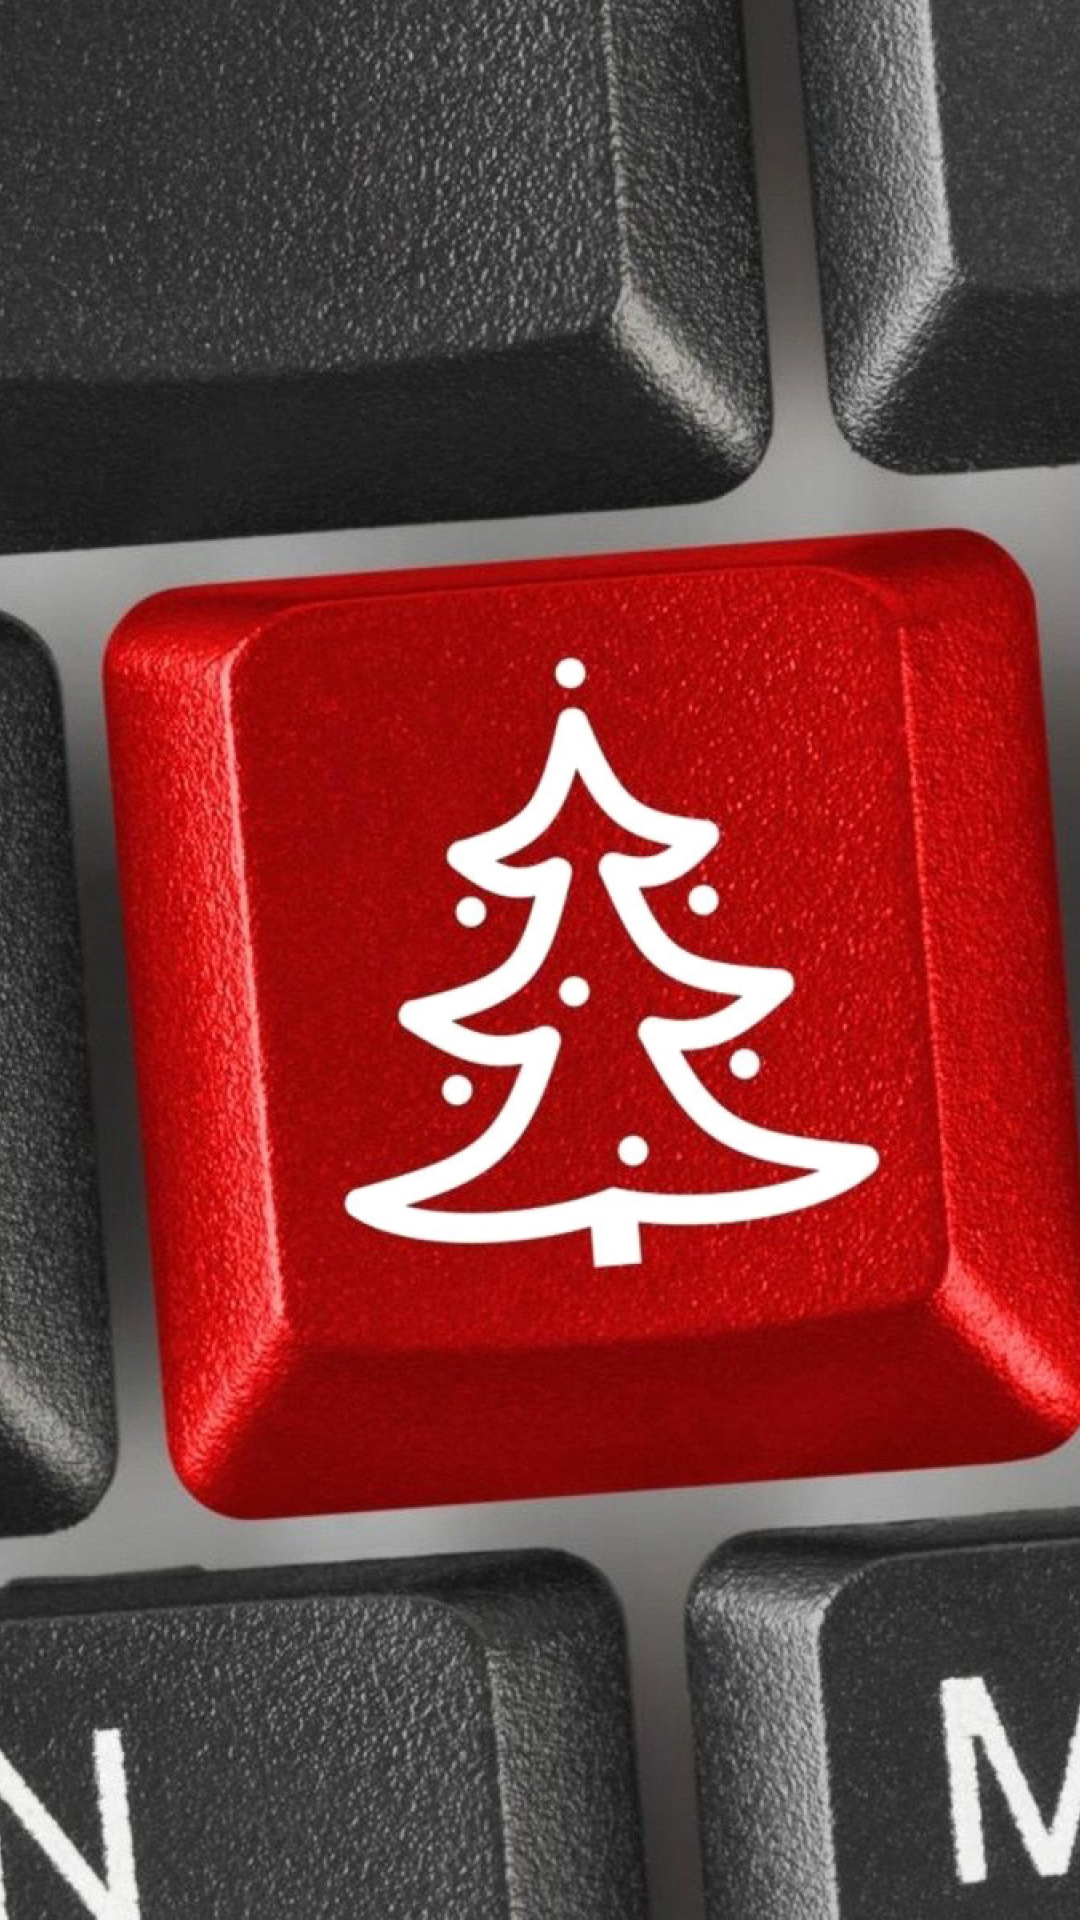 Sfondi Christmas Tree on Computer Keyboard 1080x1920